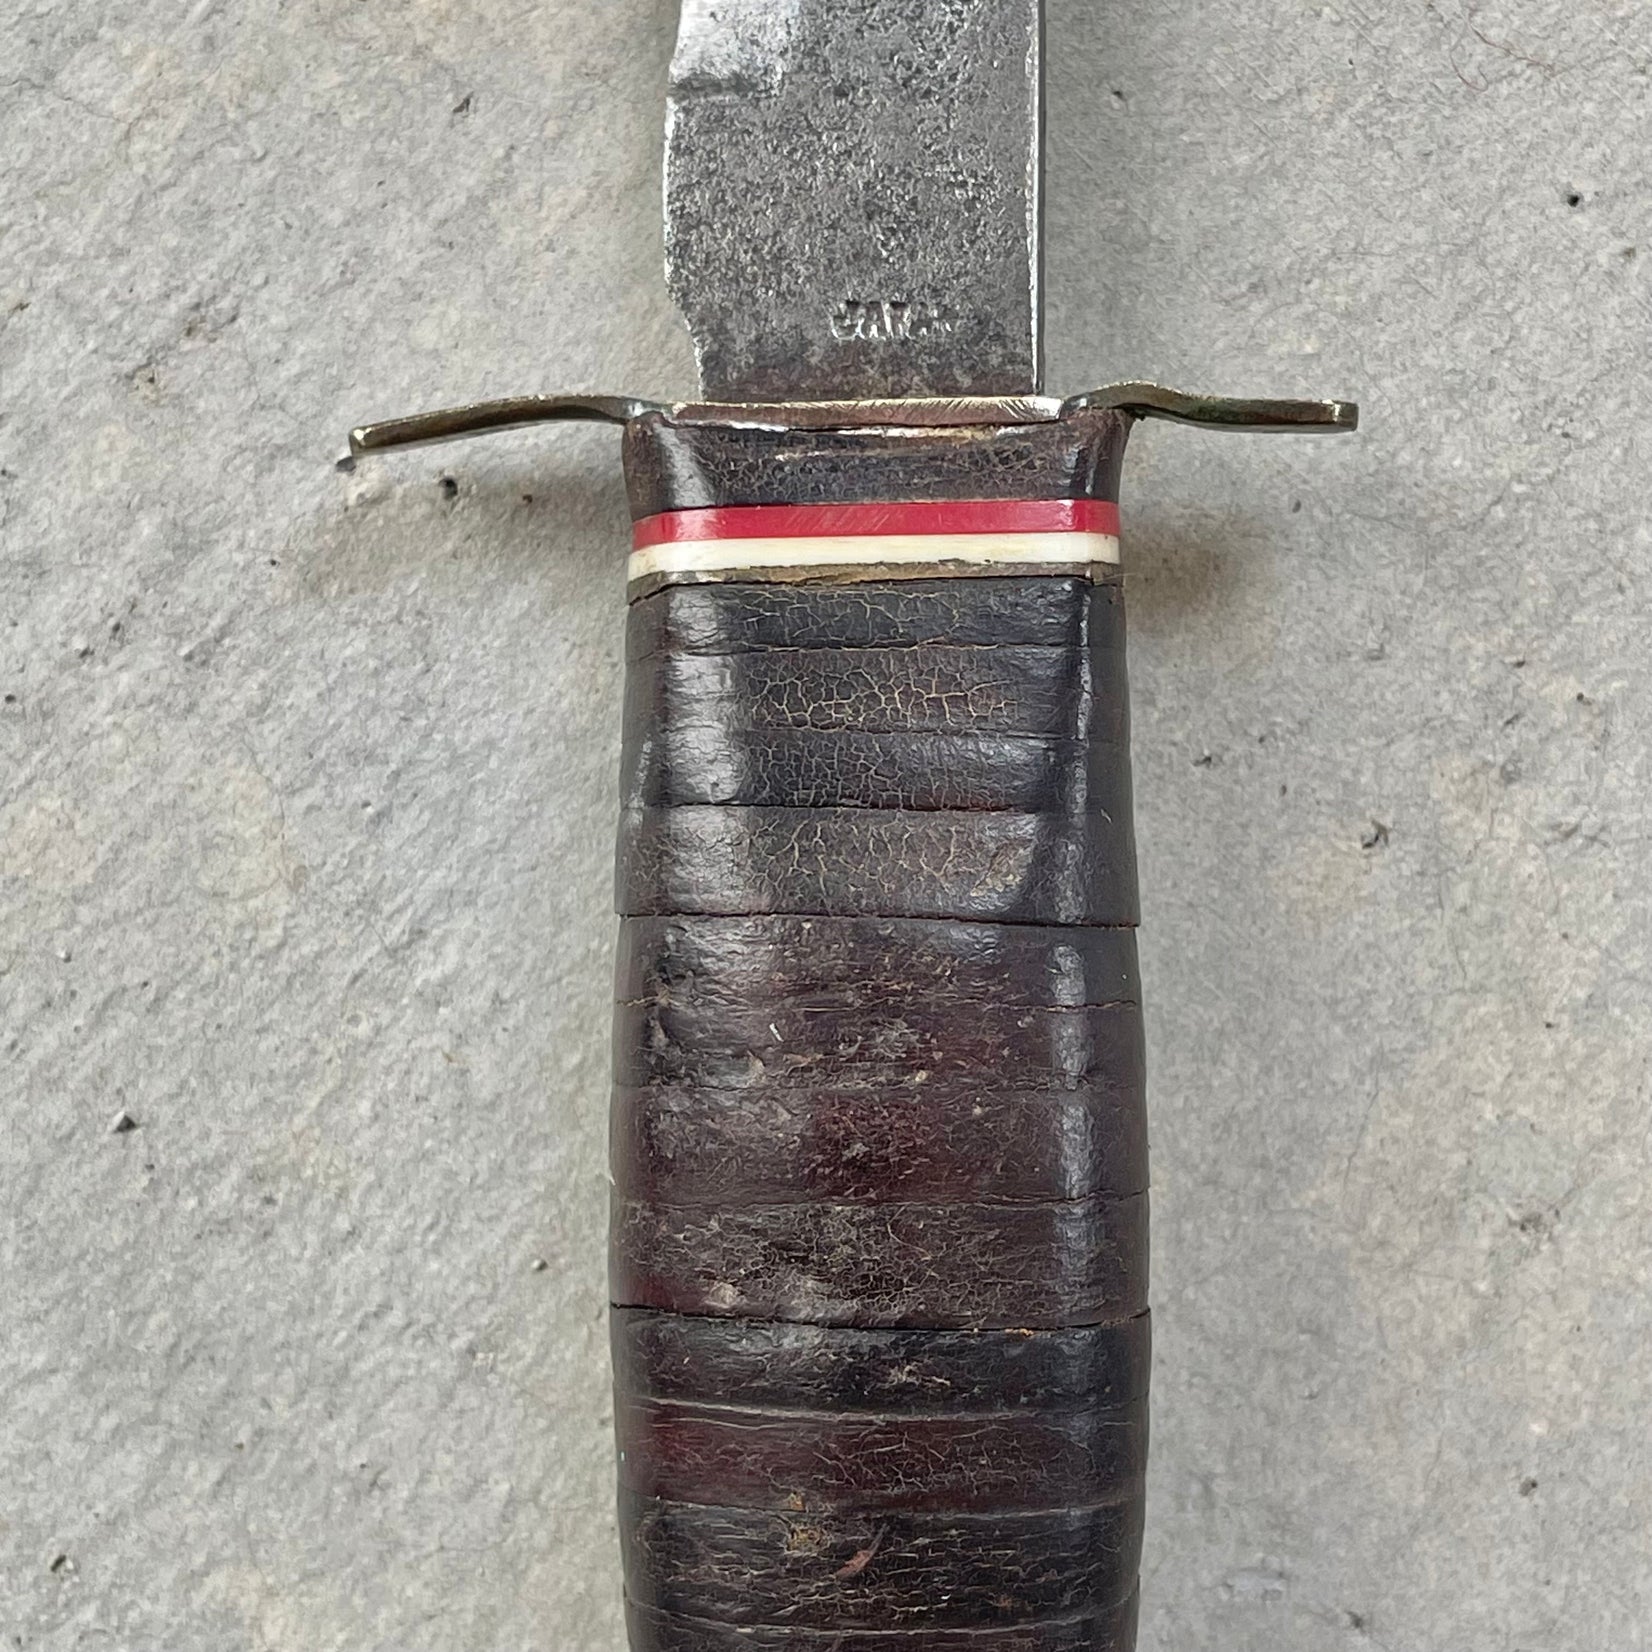 Japanese Camp Knife, 1960s Japan